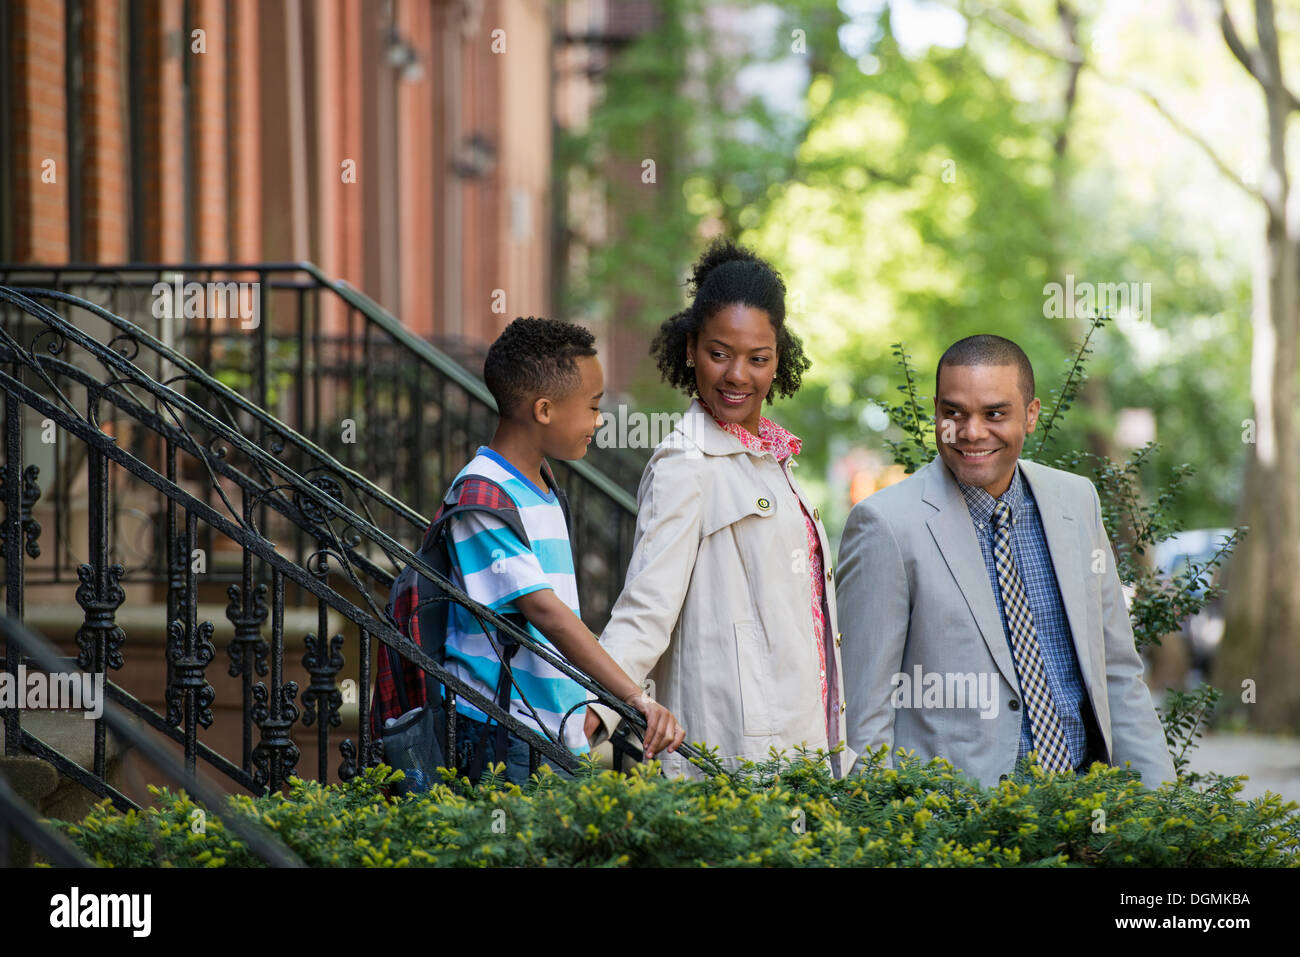 Eine Familie im Freien in der Stadt. Zwei Eltern und ein kleiner Junge zusammen spazieren. Stockfoto